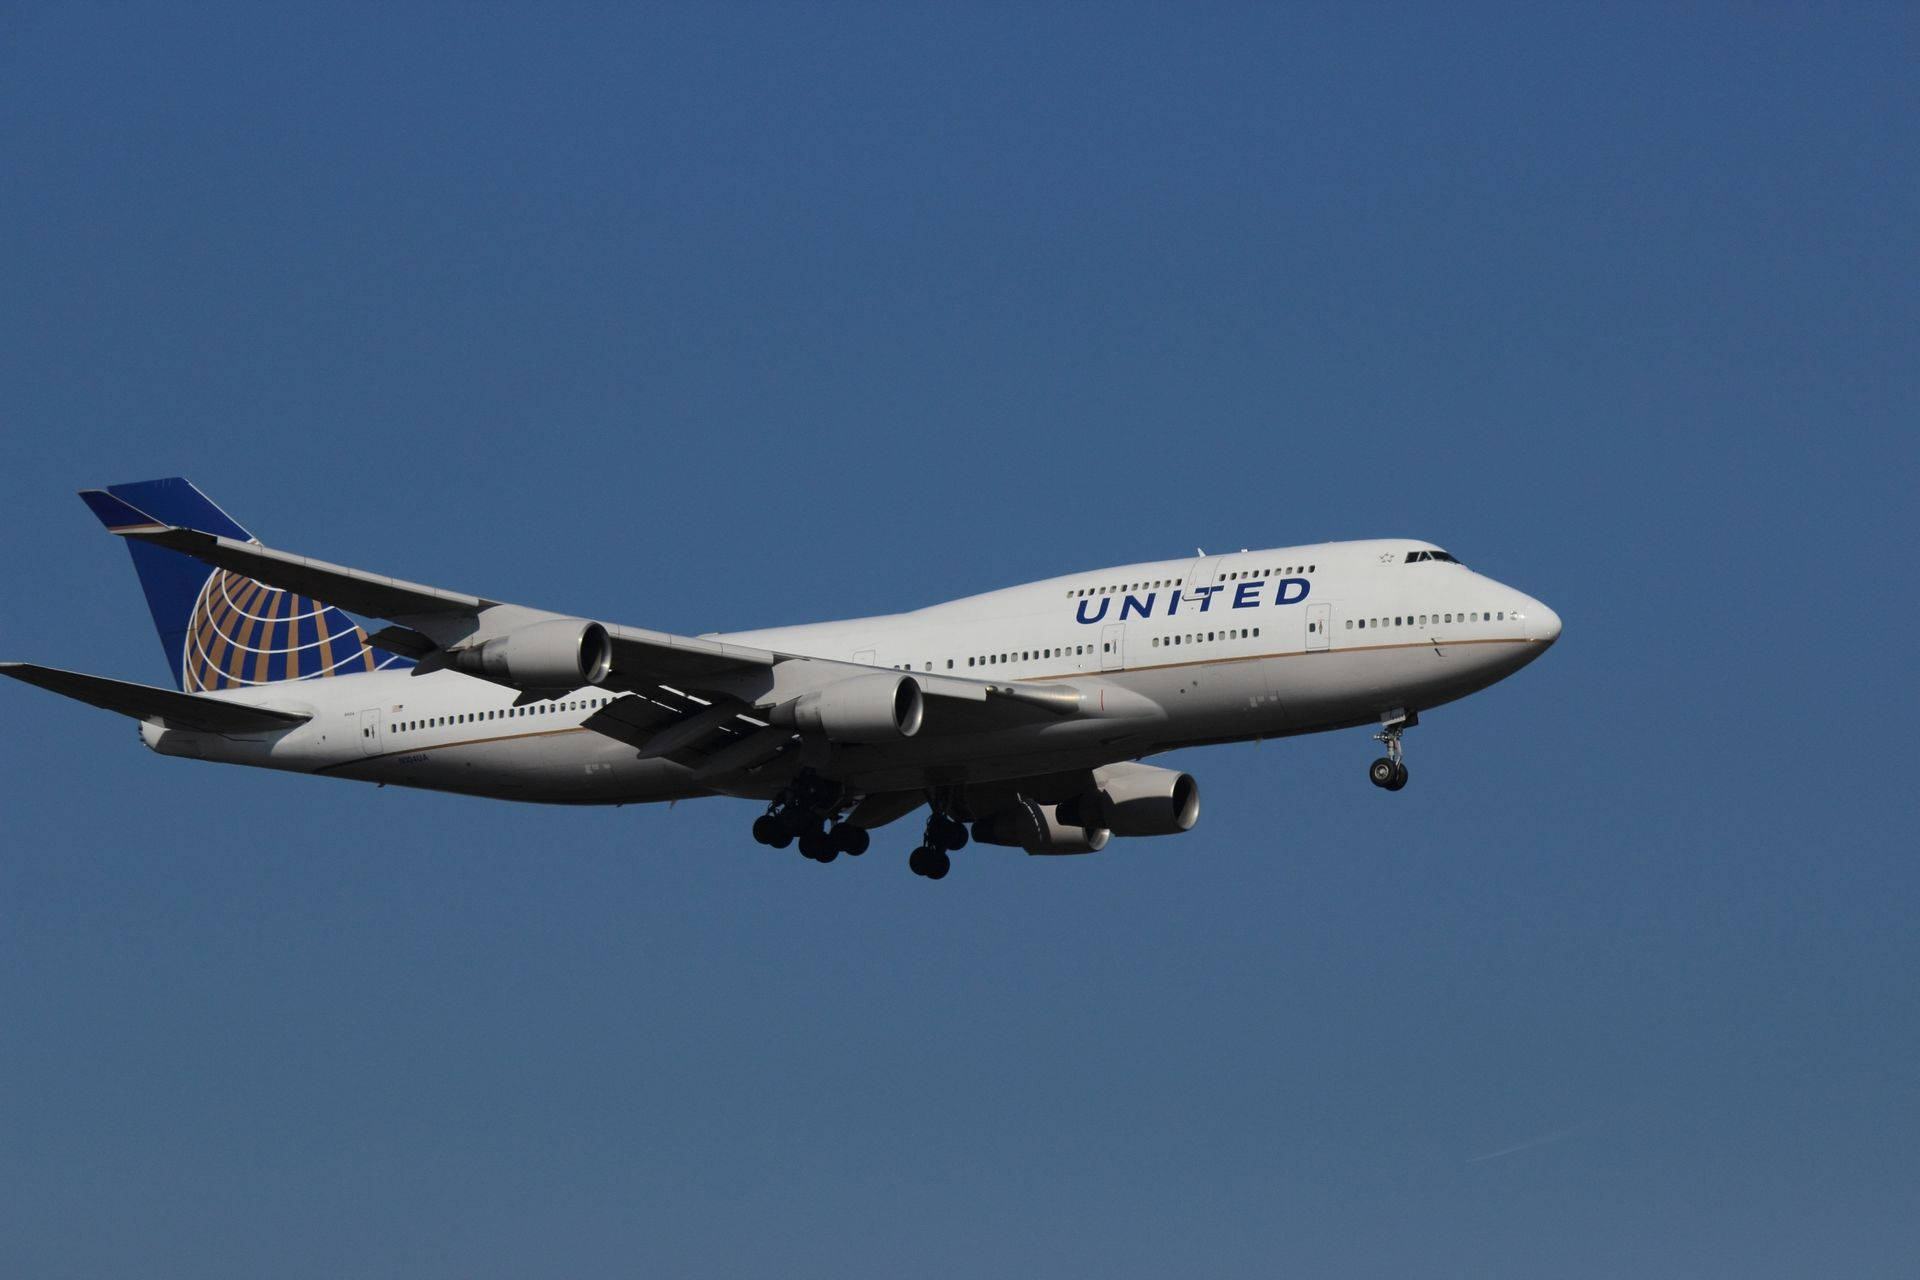 Avióngris Claro De United Airlines Volando. Fondo de pantalla